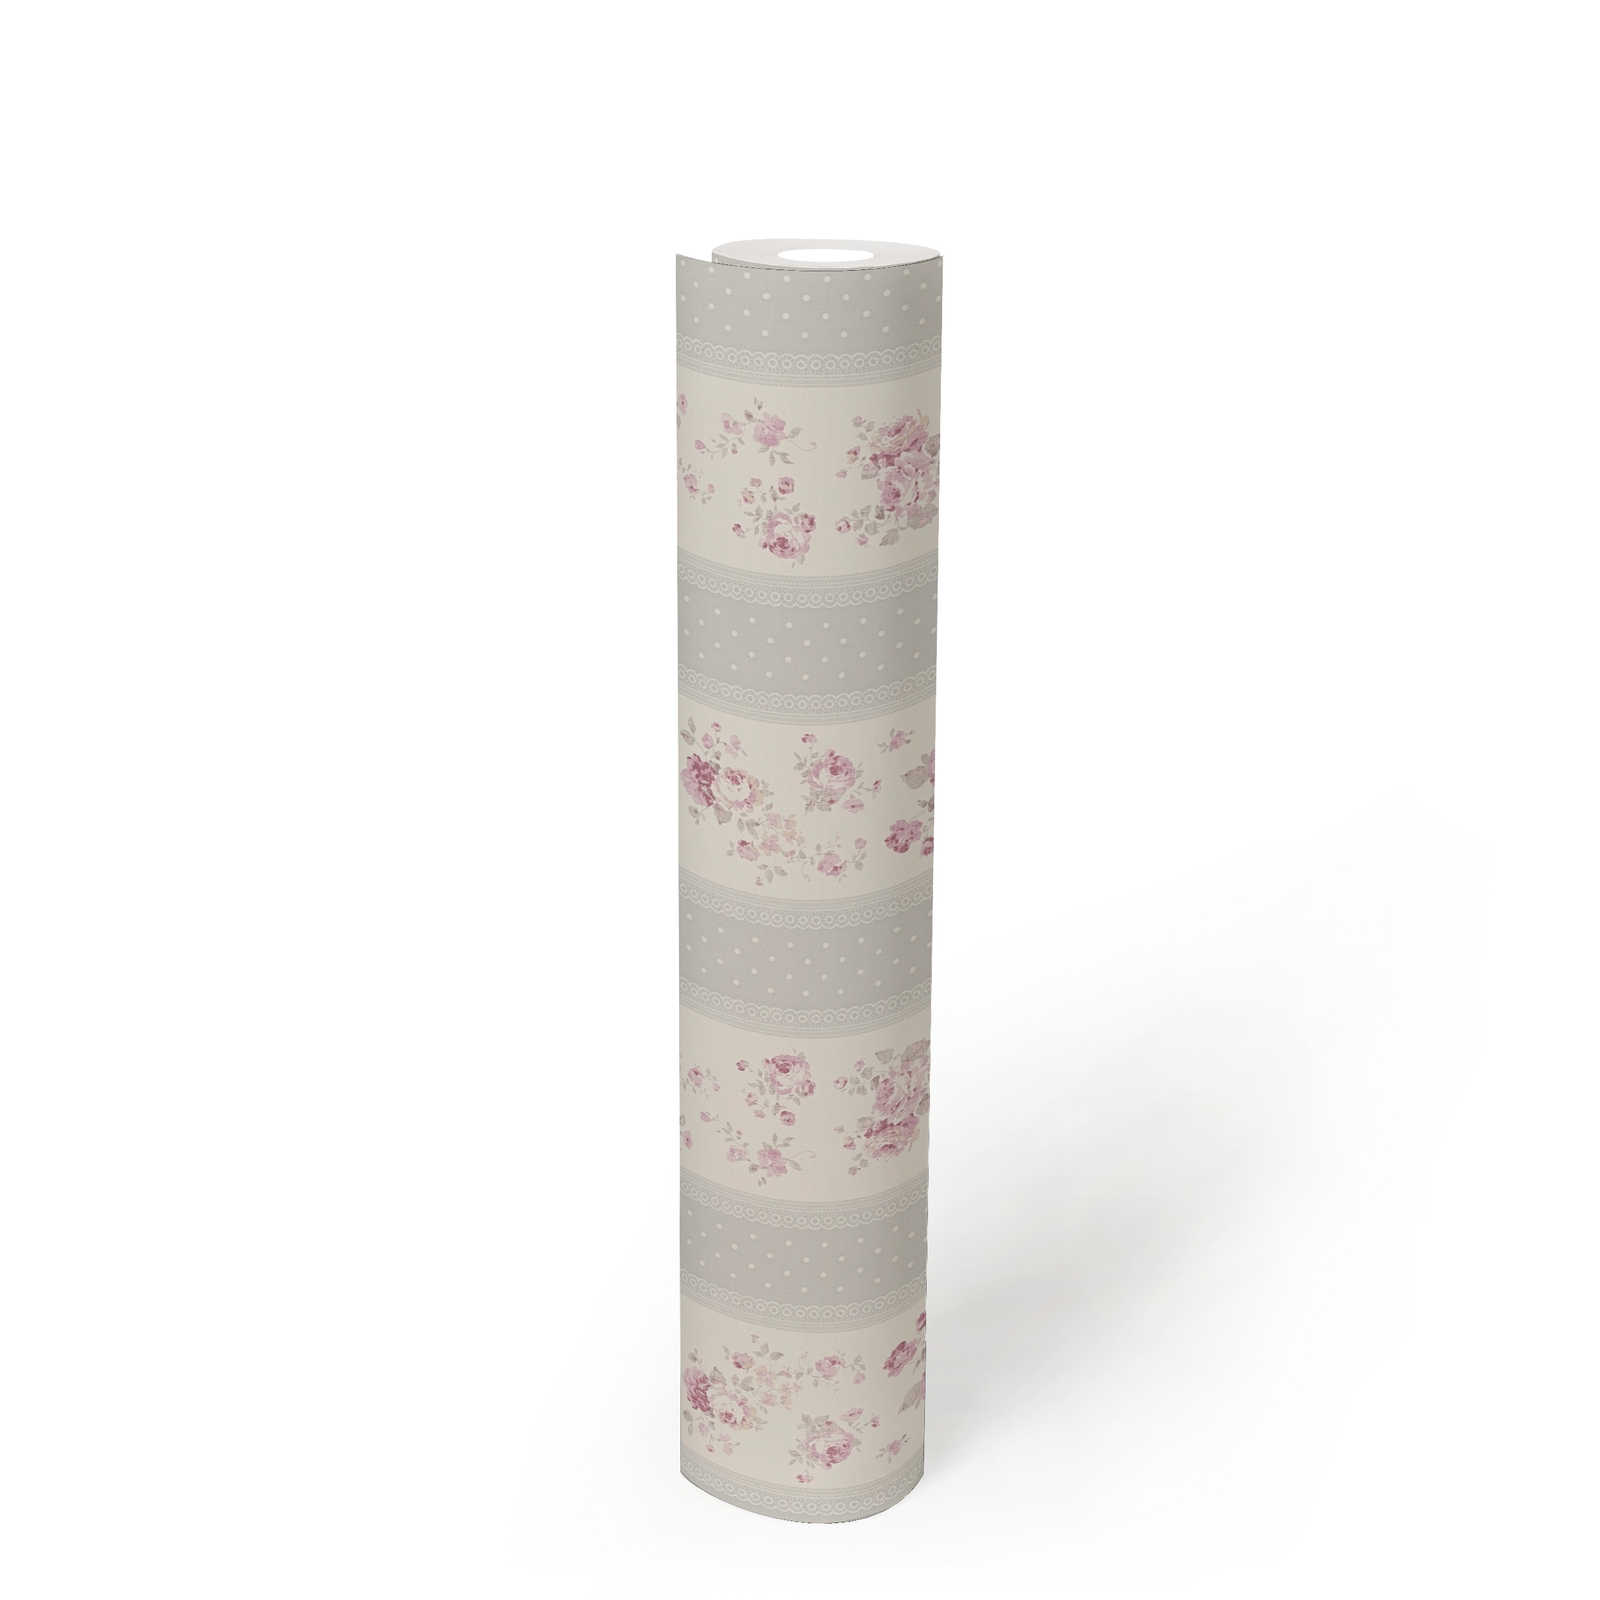             Streifentapete mit Blumen und Punkt Muster – Grau, Weiß, Rosa
        